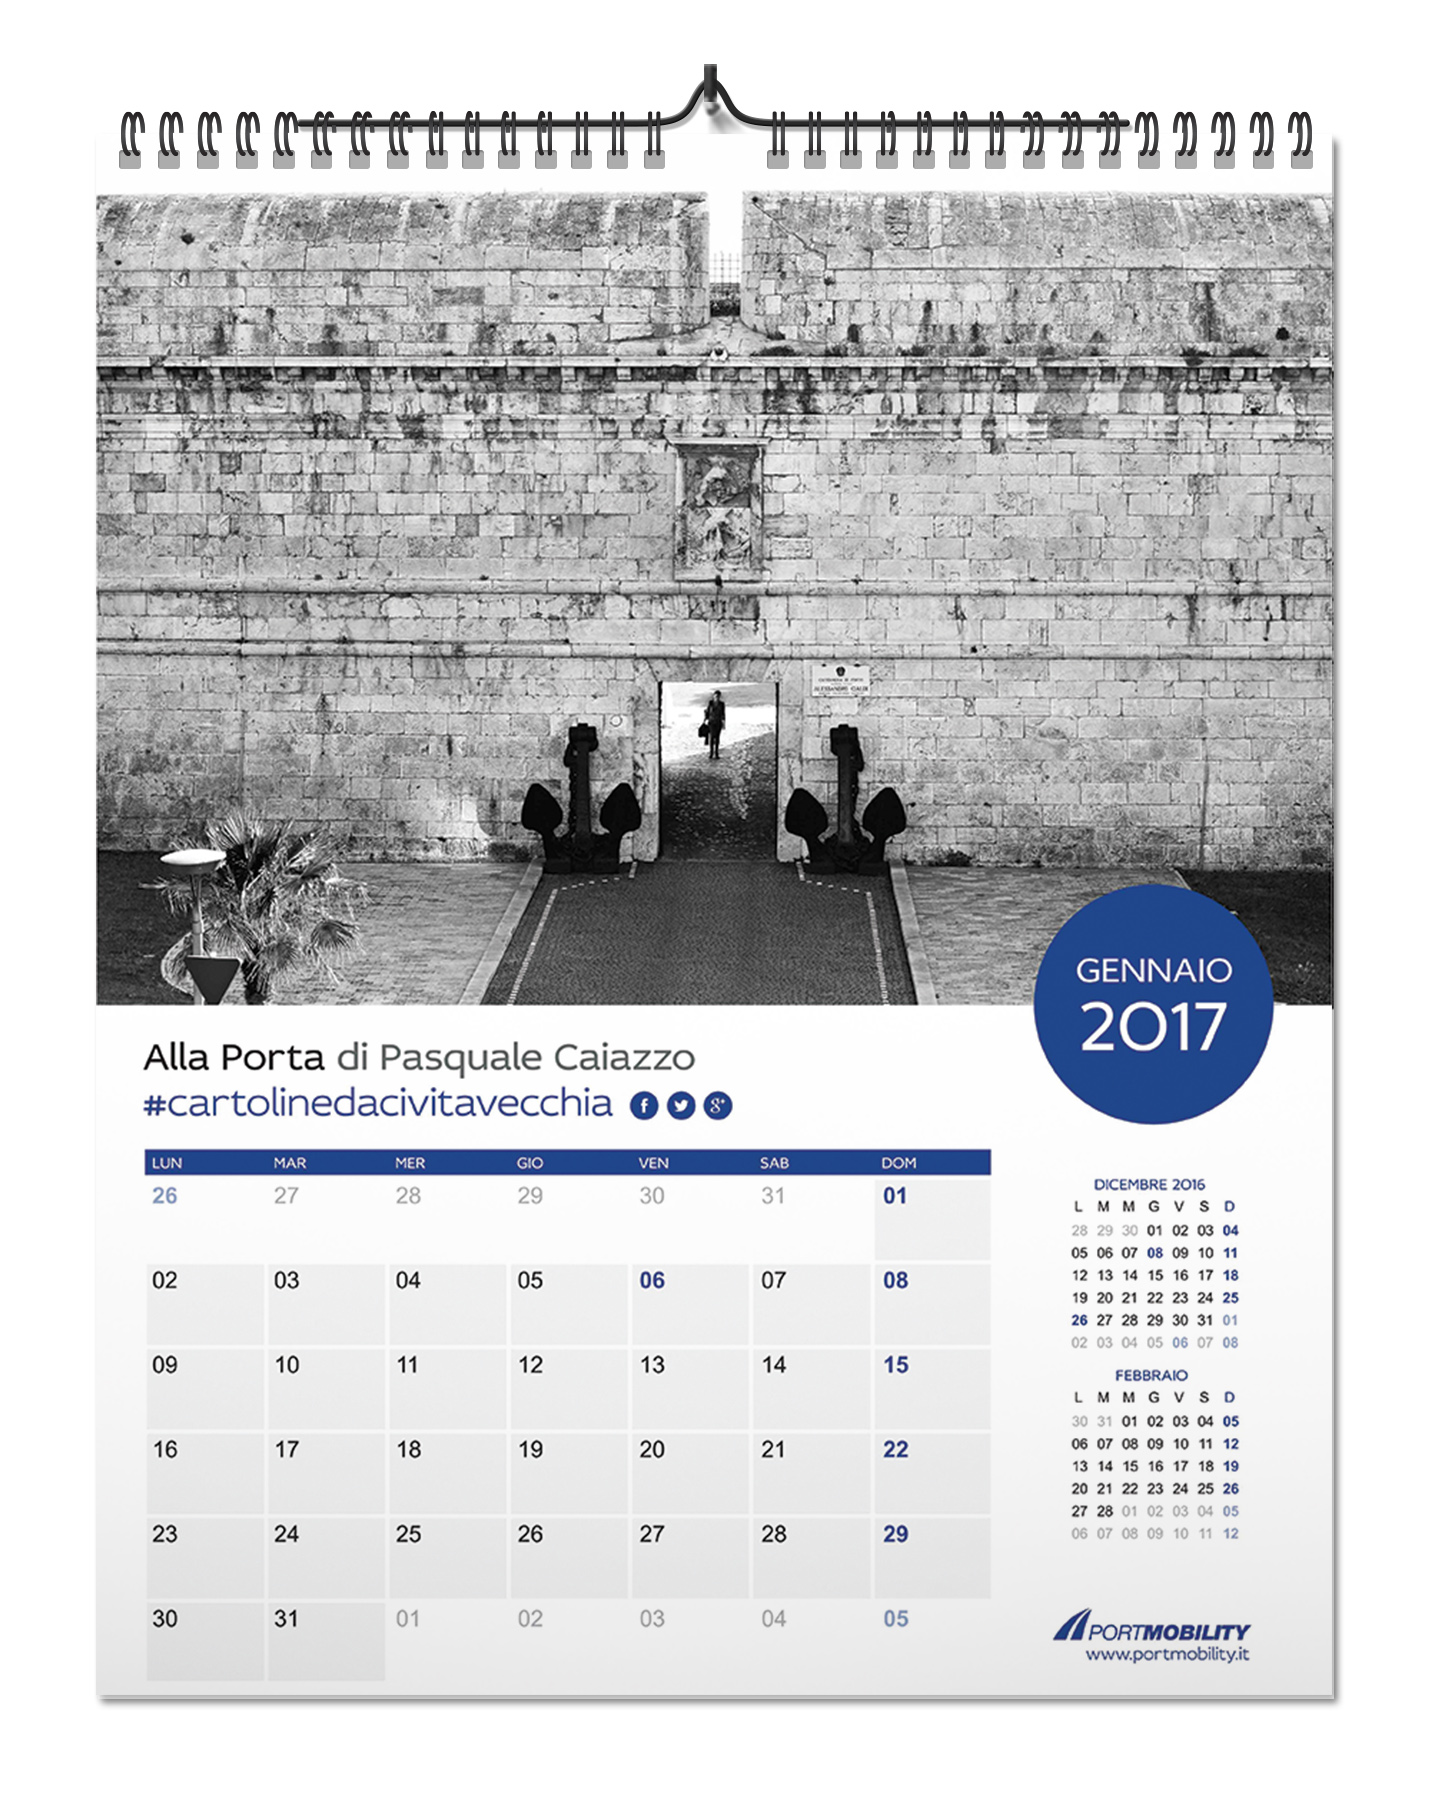 Il mese di Gennaio del Calendario 2017